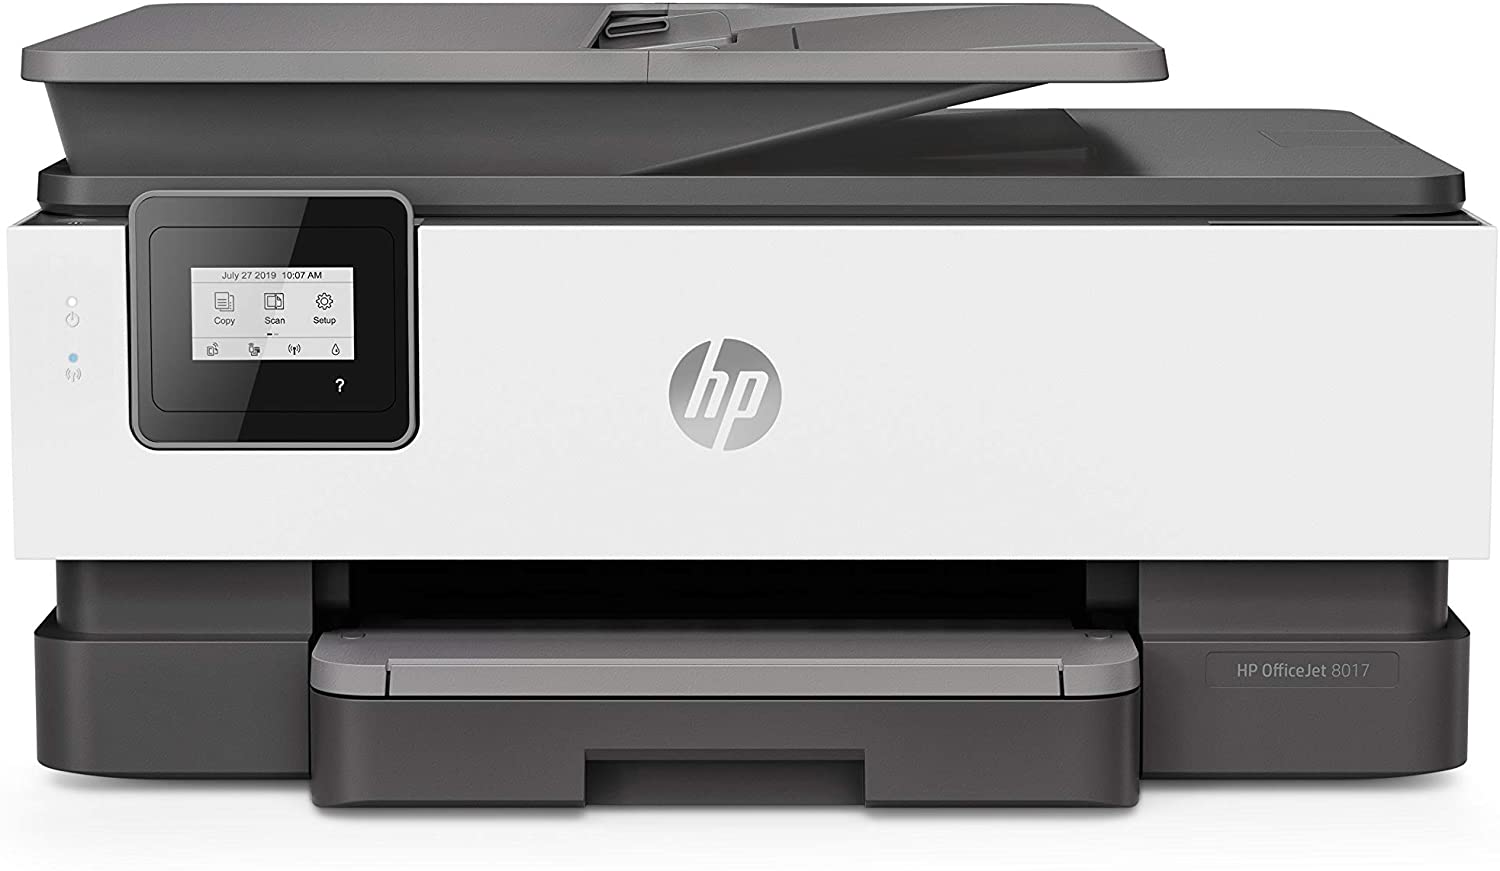 Náplně do tiskárny HP OfficeJet 8017